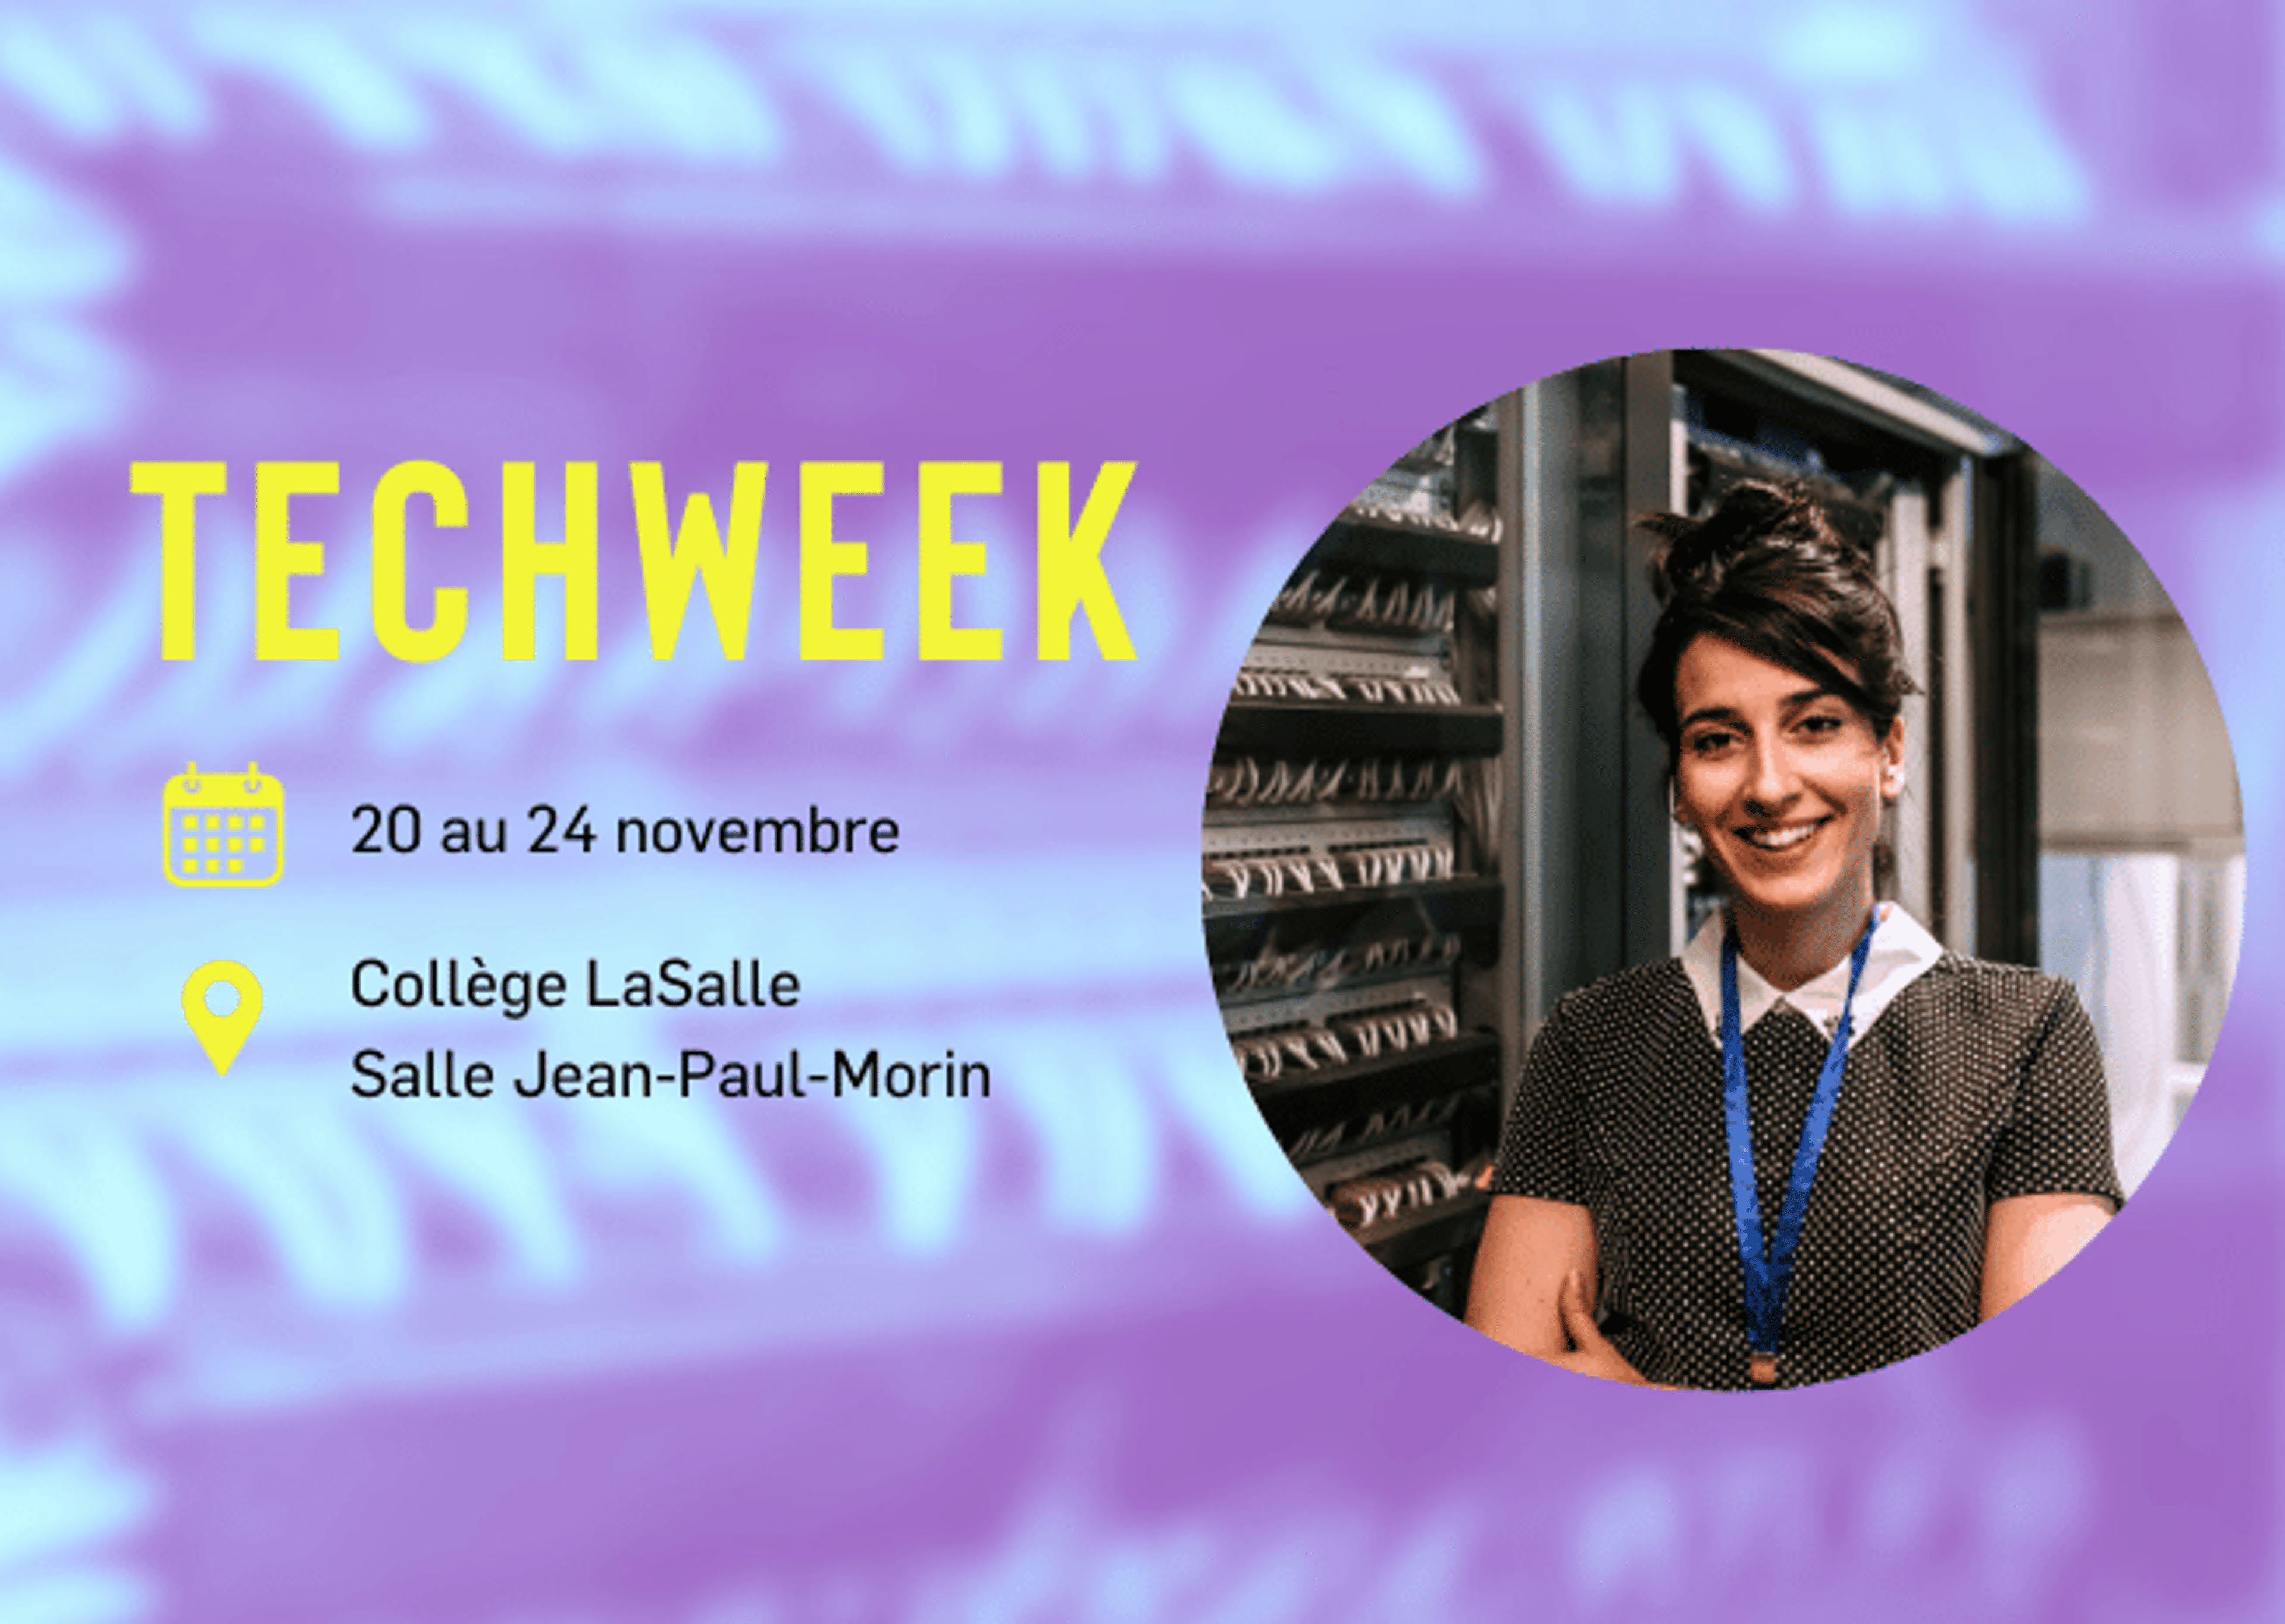 Une femme professionnelle à la Tech Week, du 20 au 24 novembre au Collège LaSalle, Salle Jean-Paul-Morin.